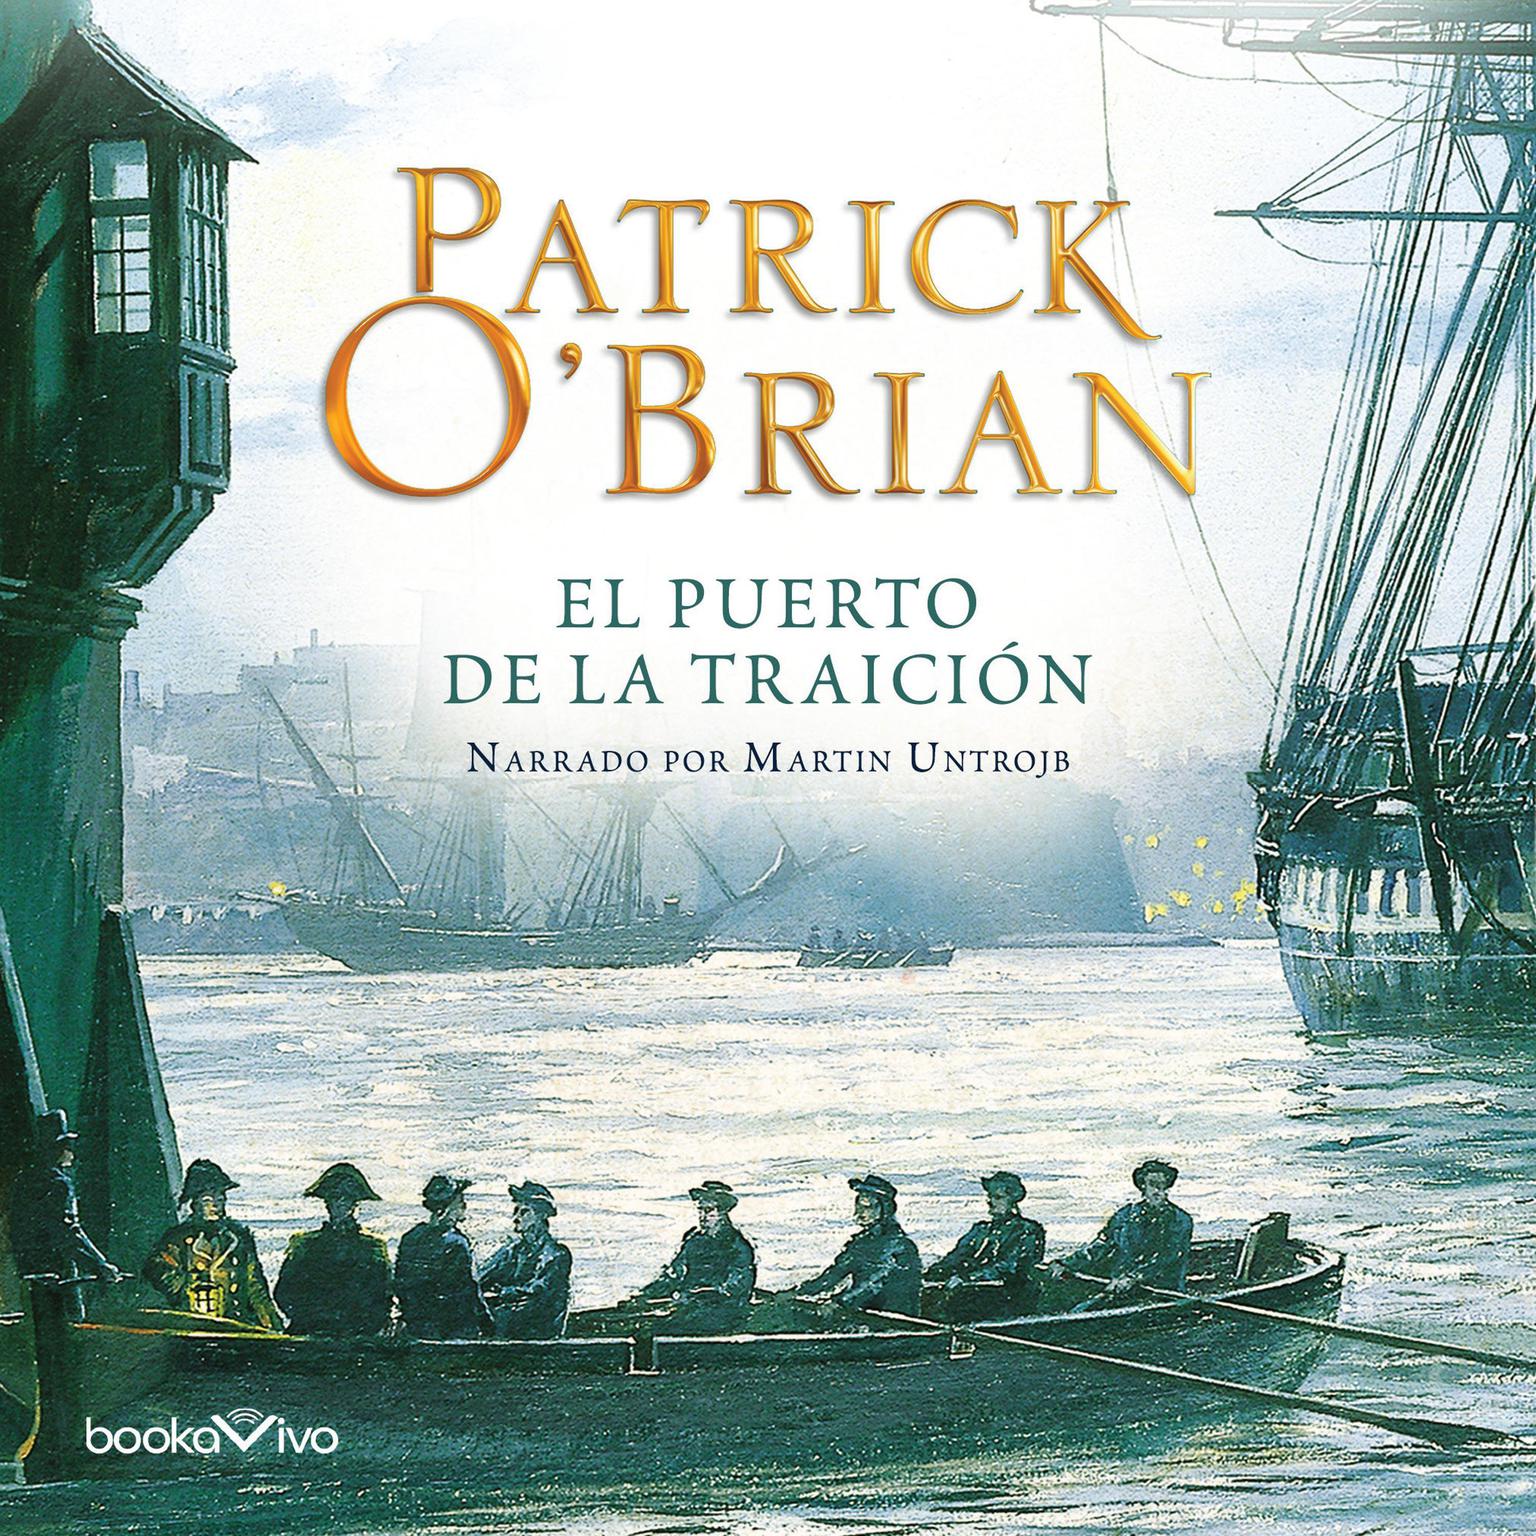 El Puerto de la Traicion Audiobook, by Patrick O'Brian